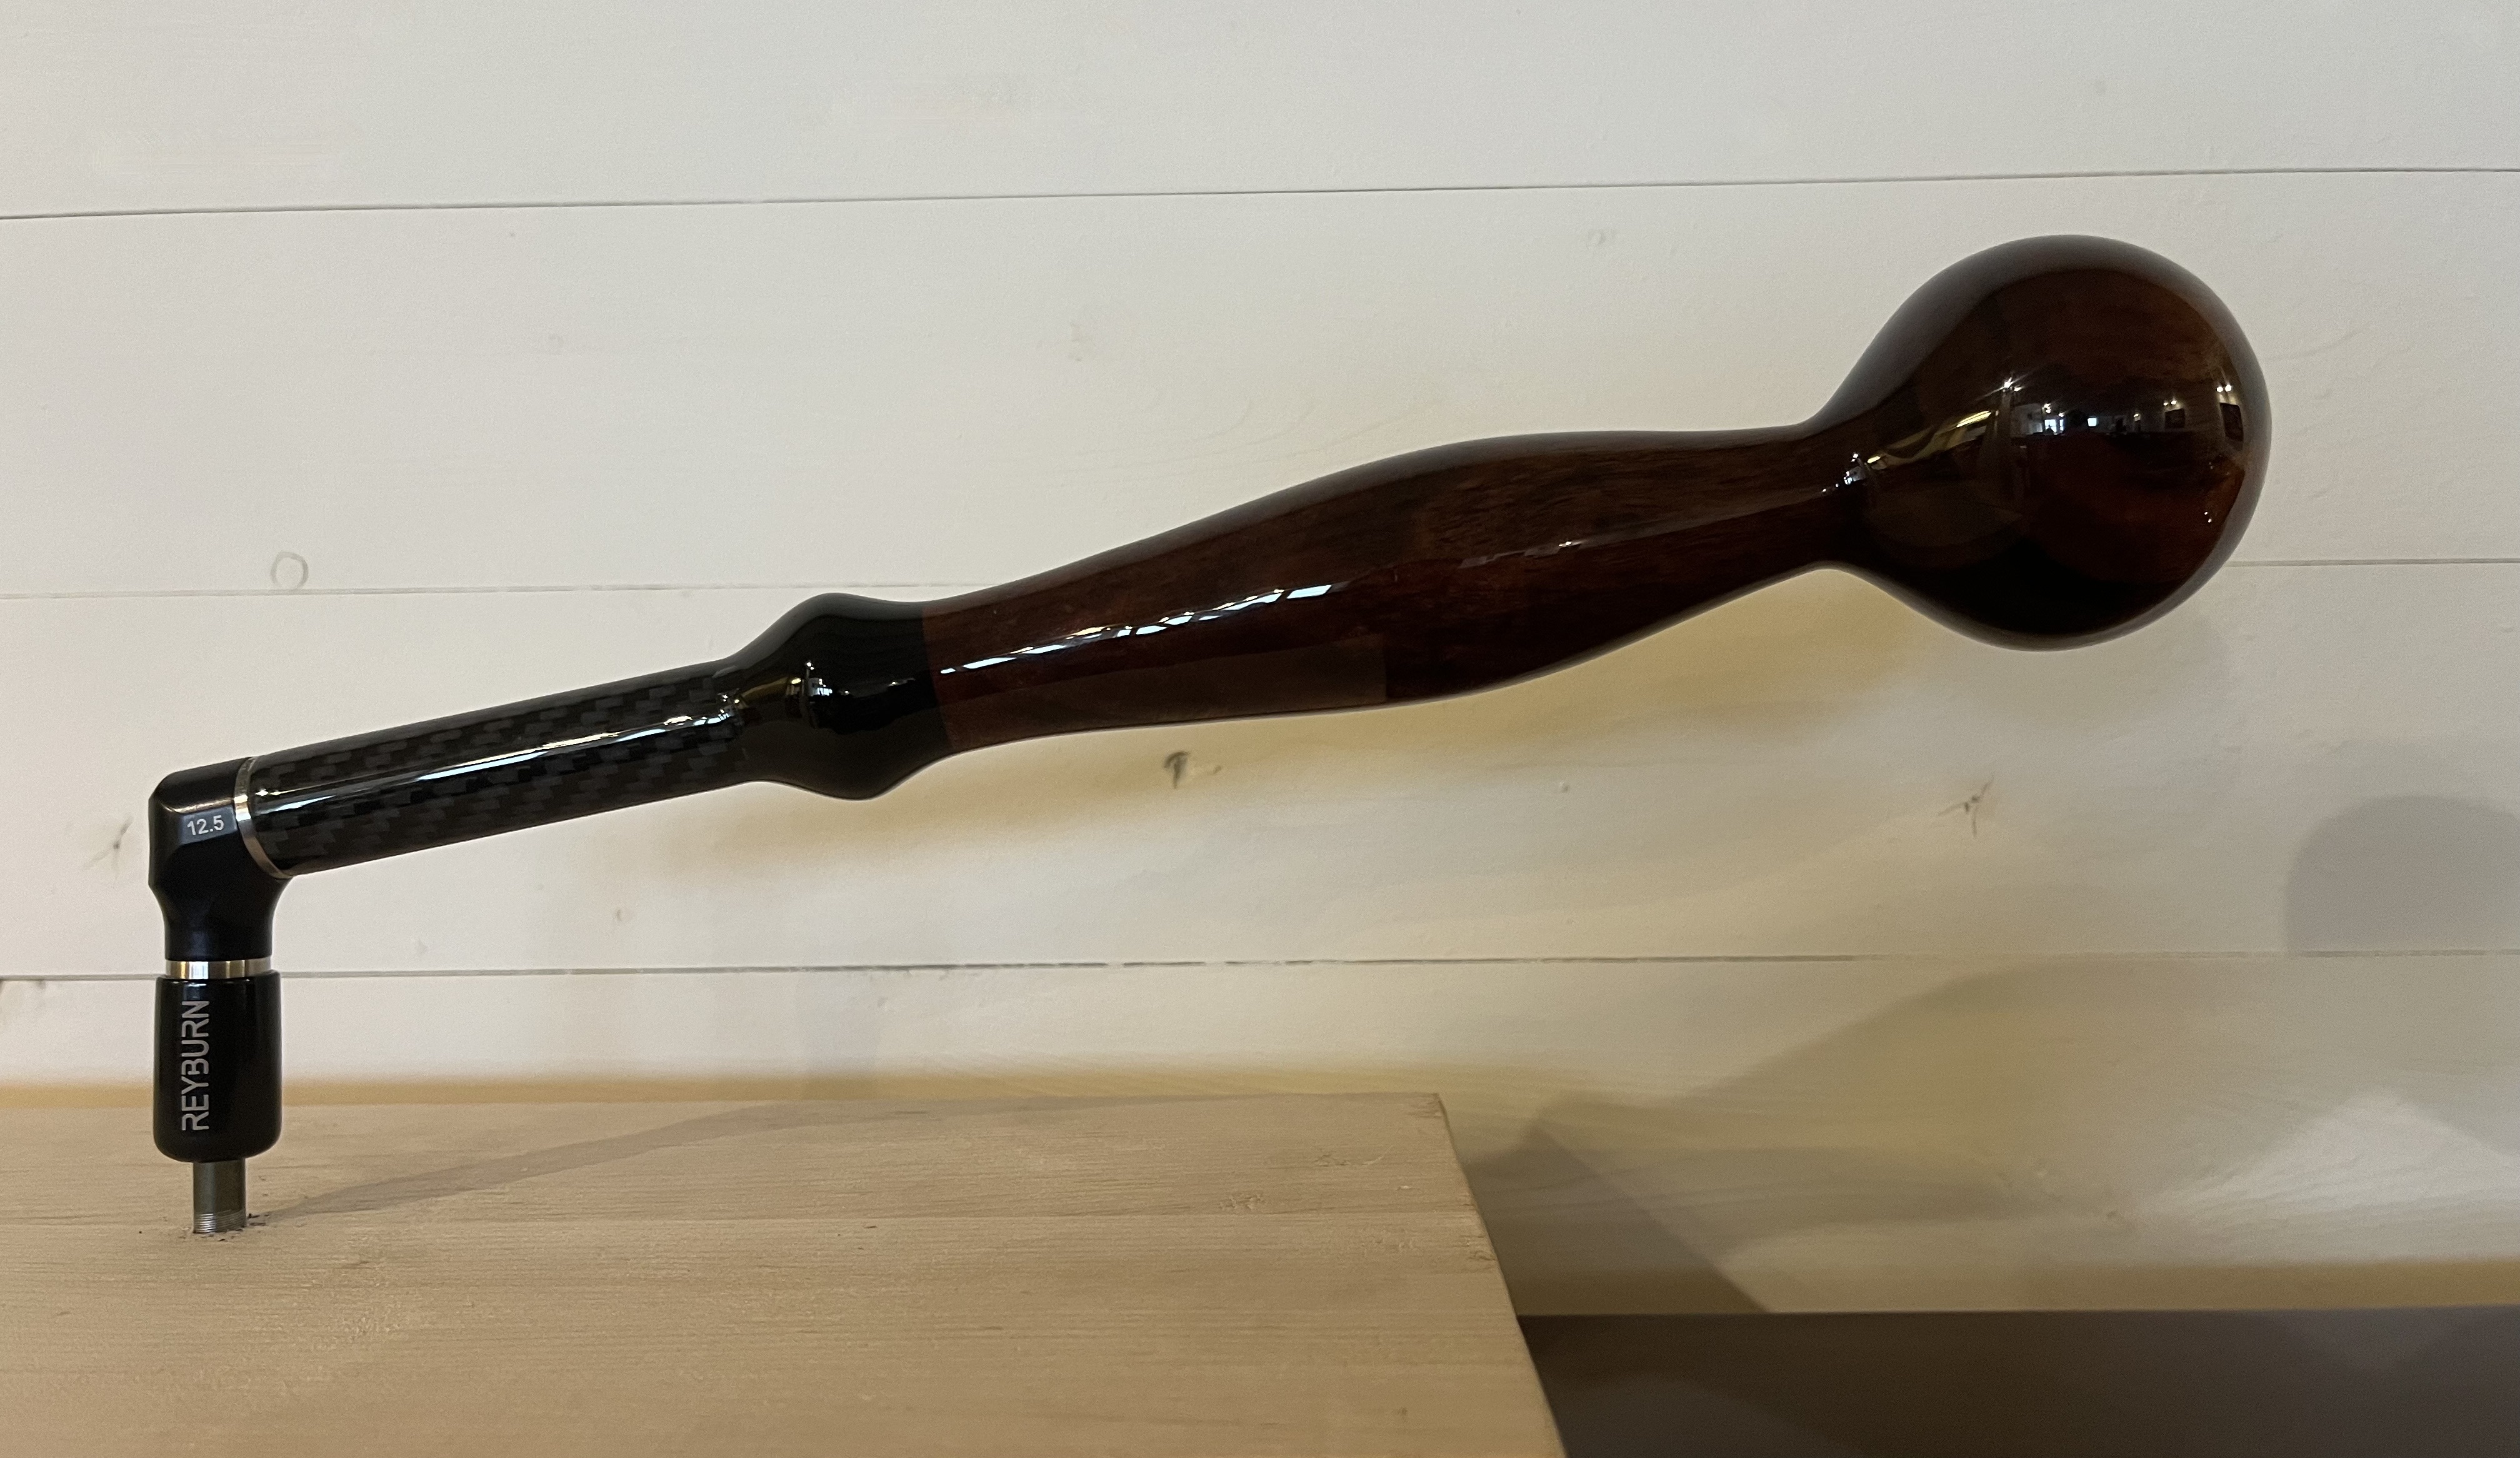 Taffijn Reyburn stemhamer full rigid Tasmanian black Acacia 32 cm